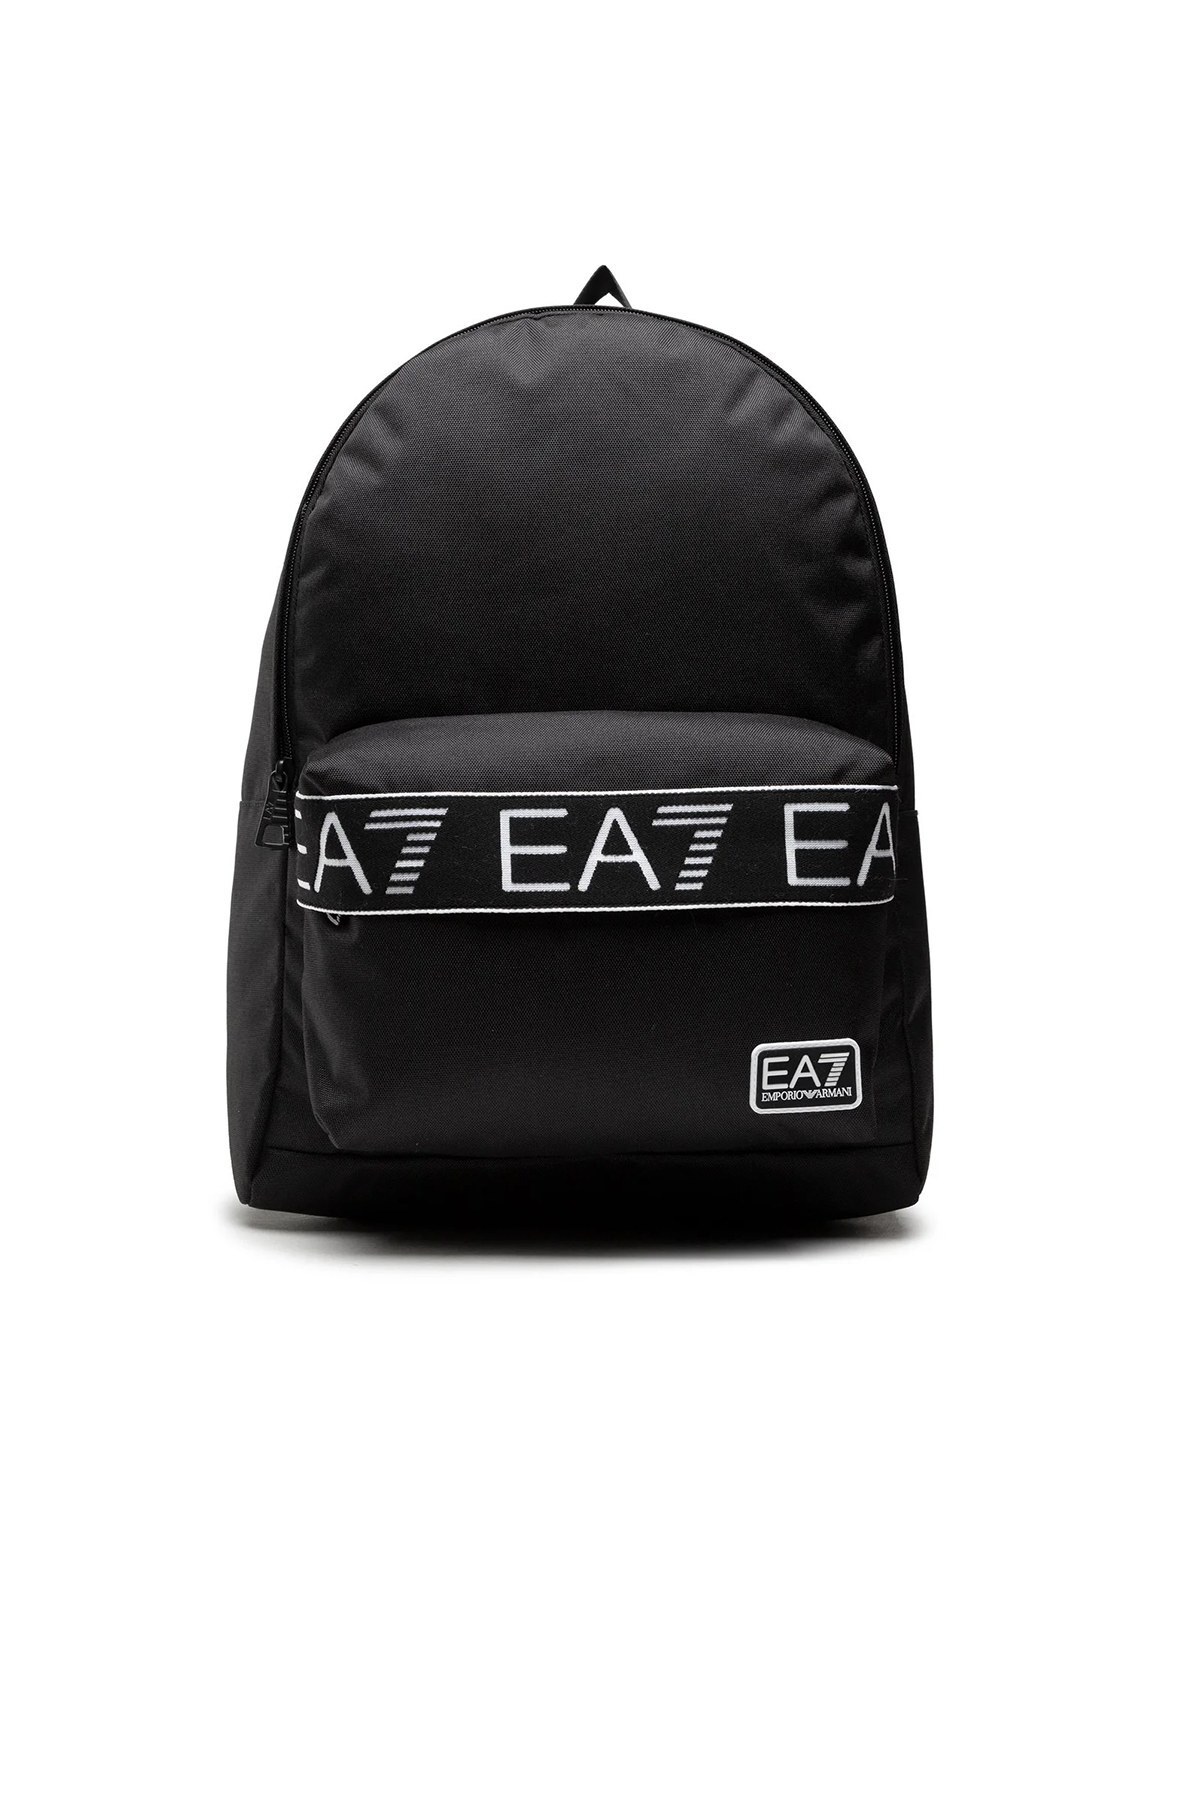 EA7 Marka Logolu Fermuarlı Erkek Sırt Çantası 276186 2R903 00020 SİYAH